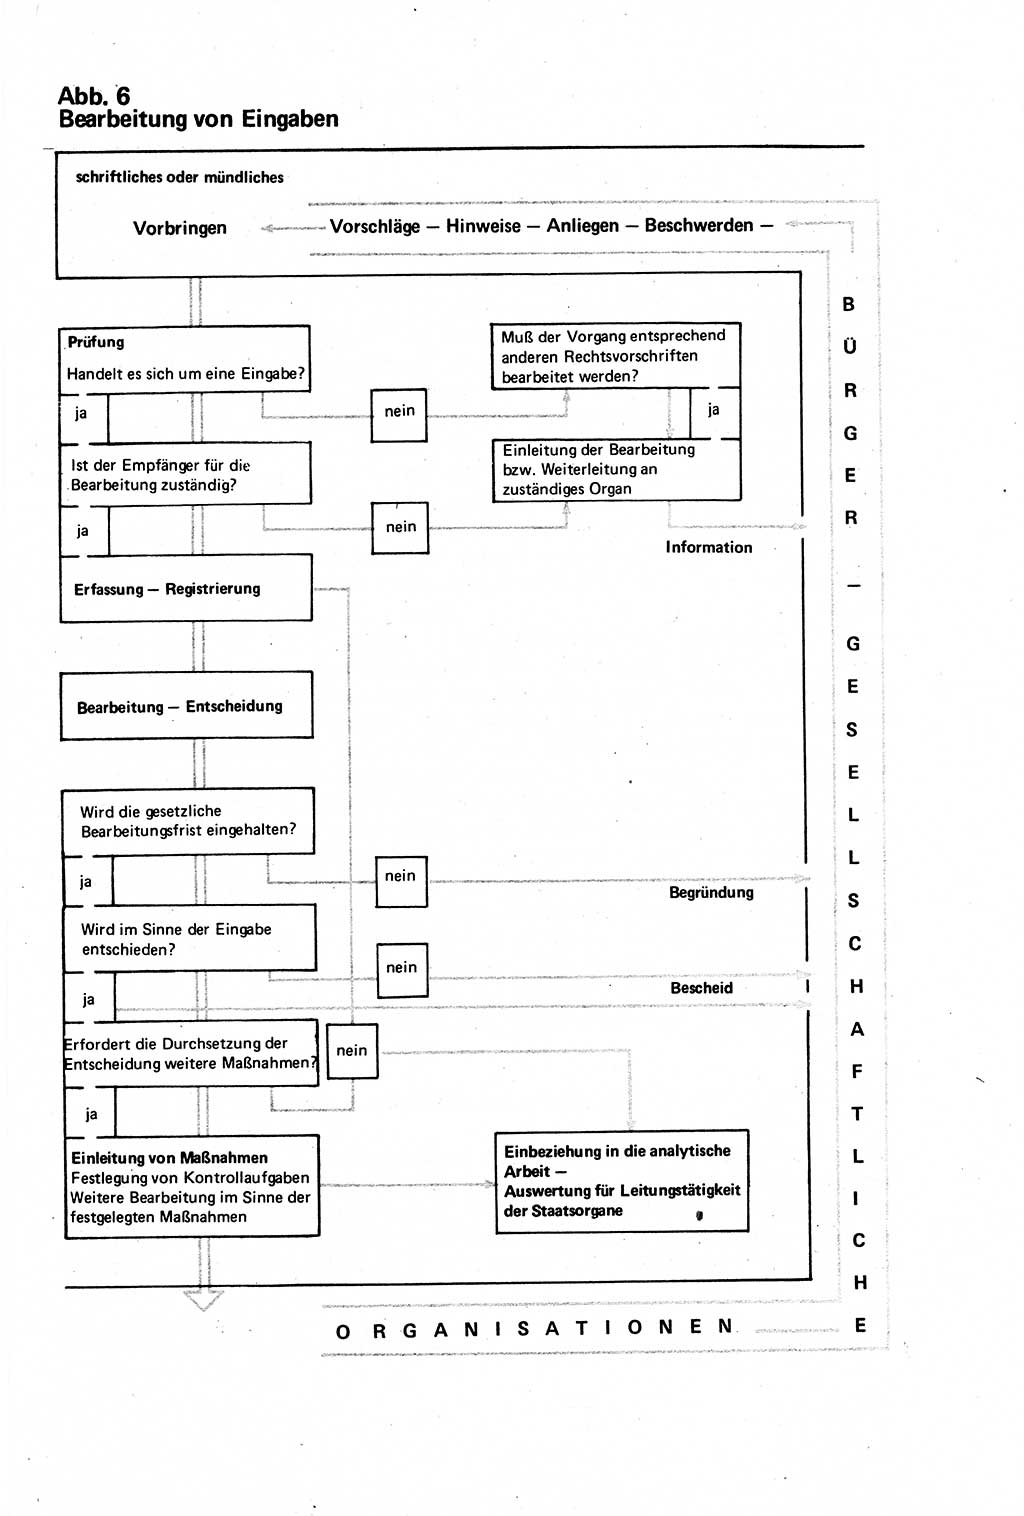 Verwaltungsrecht [Deutsche Demokratische Republik (DDR)], Lehrbuch 1979, Seite 205 (Verw.-R. DDR Lb. 1979, S. 205)